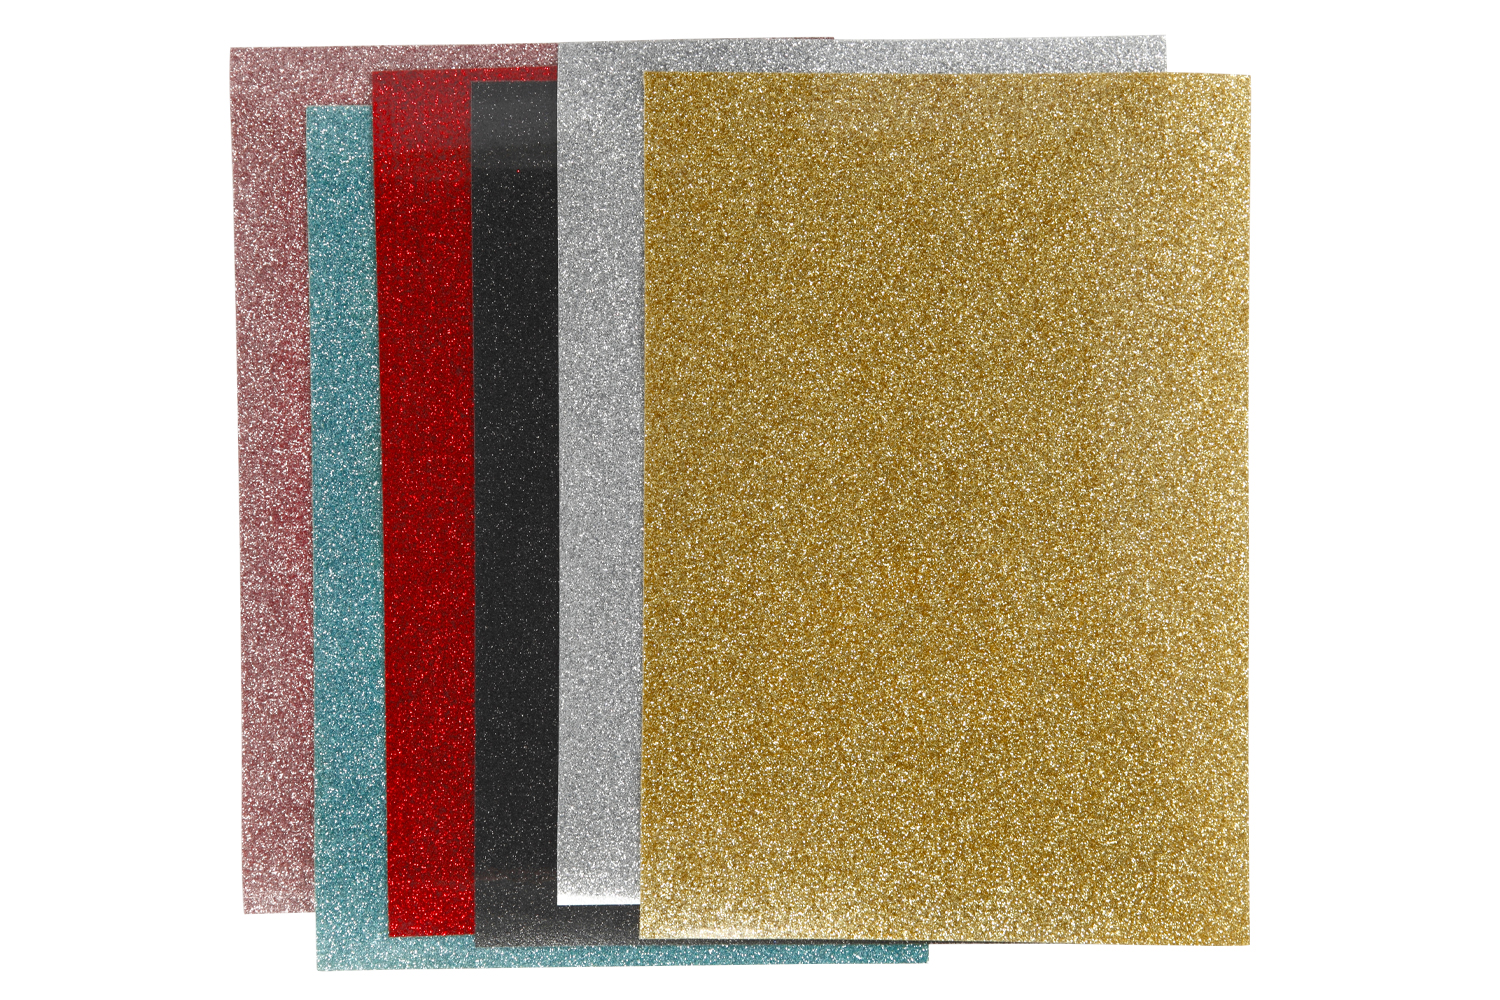 Papier transfert textile pailleté - 14,8 x 21 cm - Rosé - 1 pce - Transfert  textile - Creavea